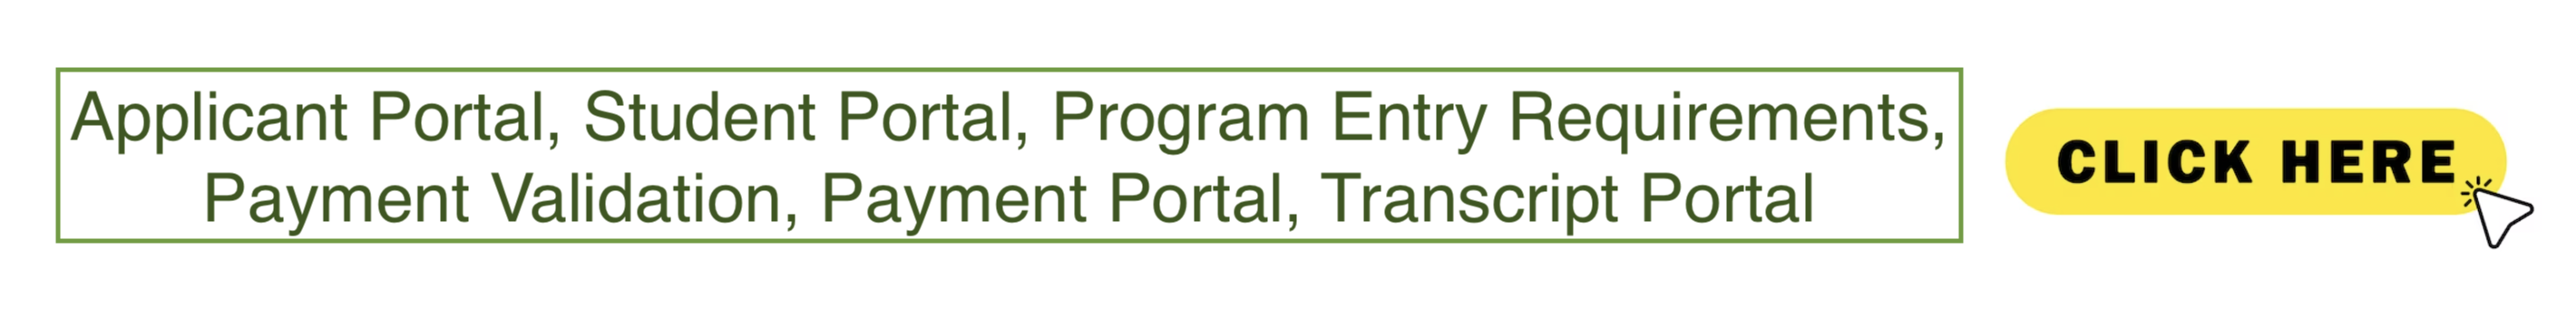 Applicants Students Alumni portals